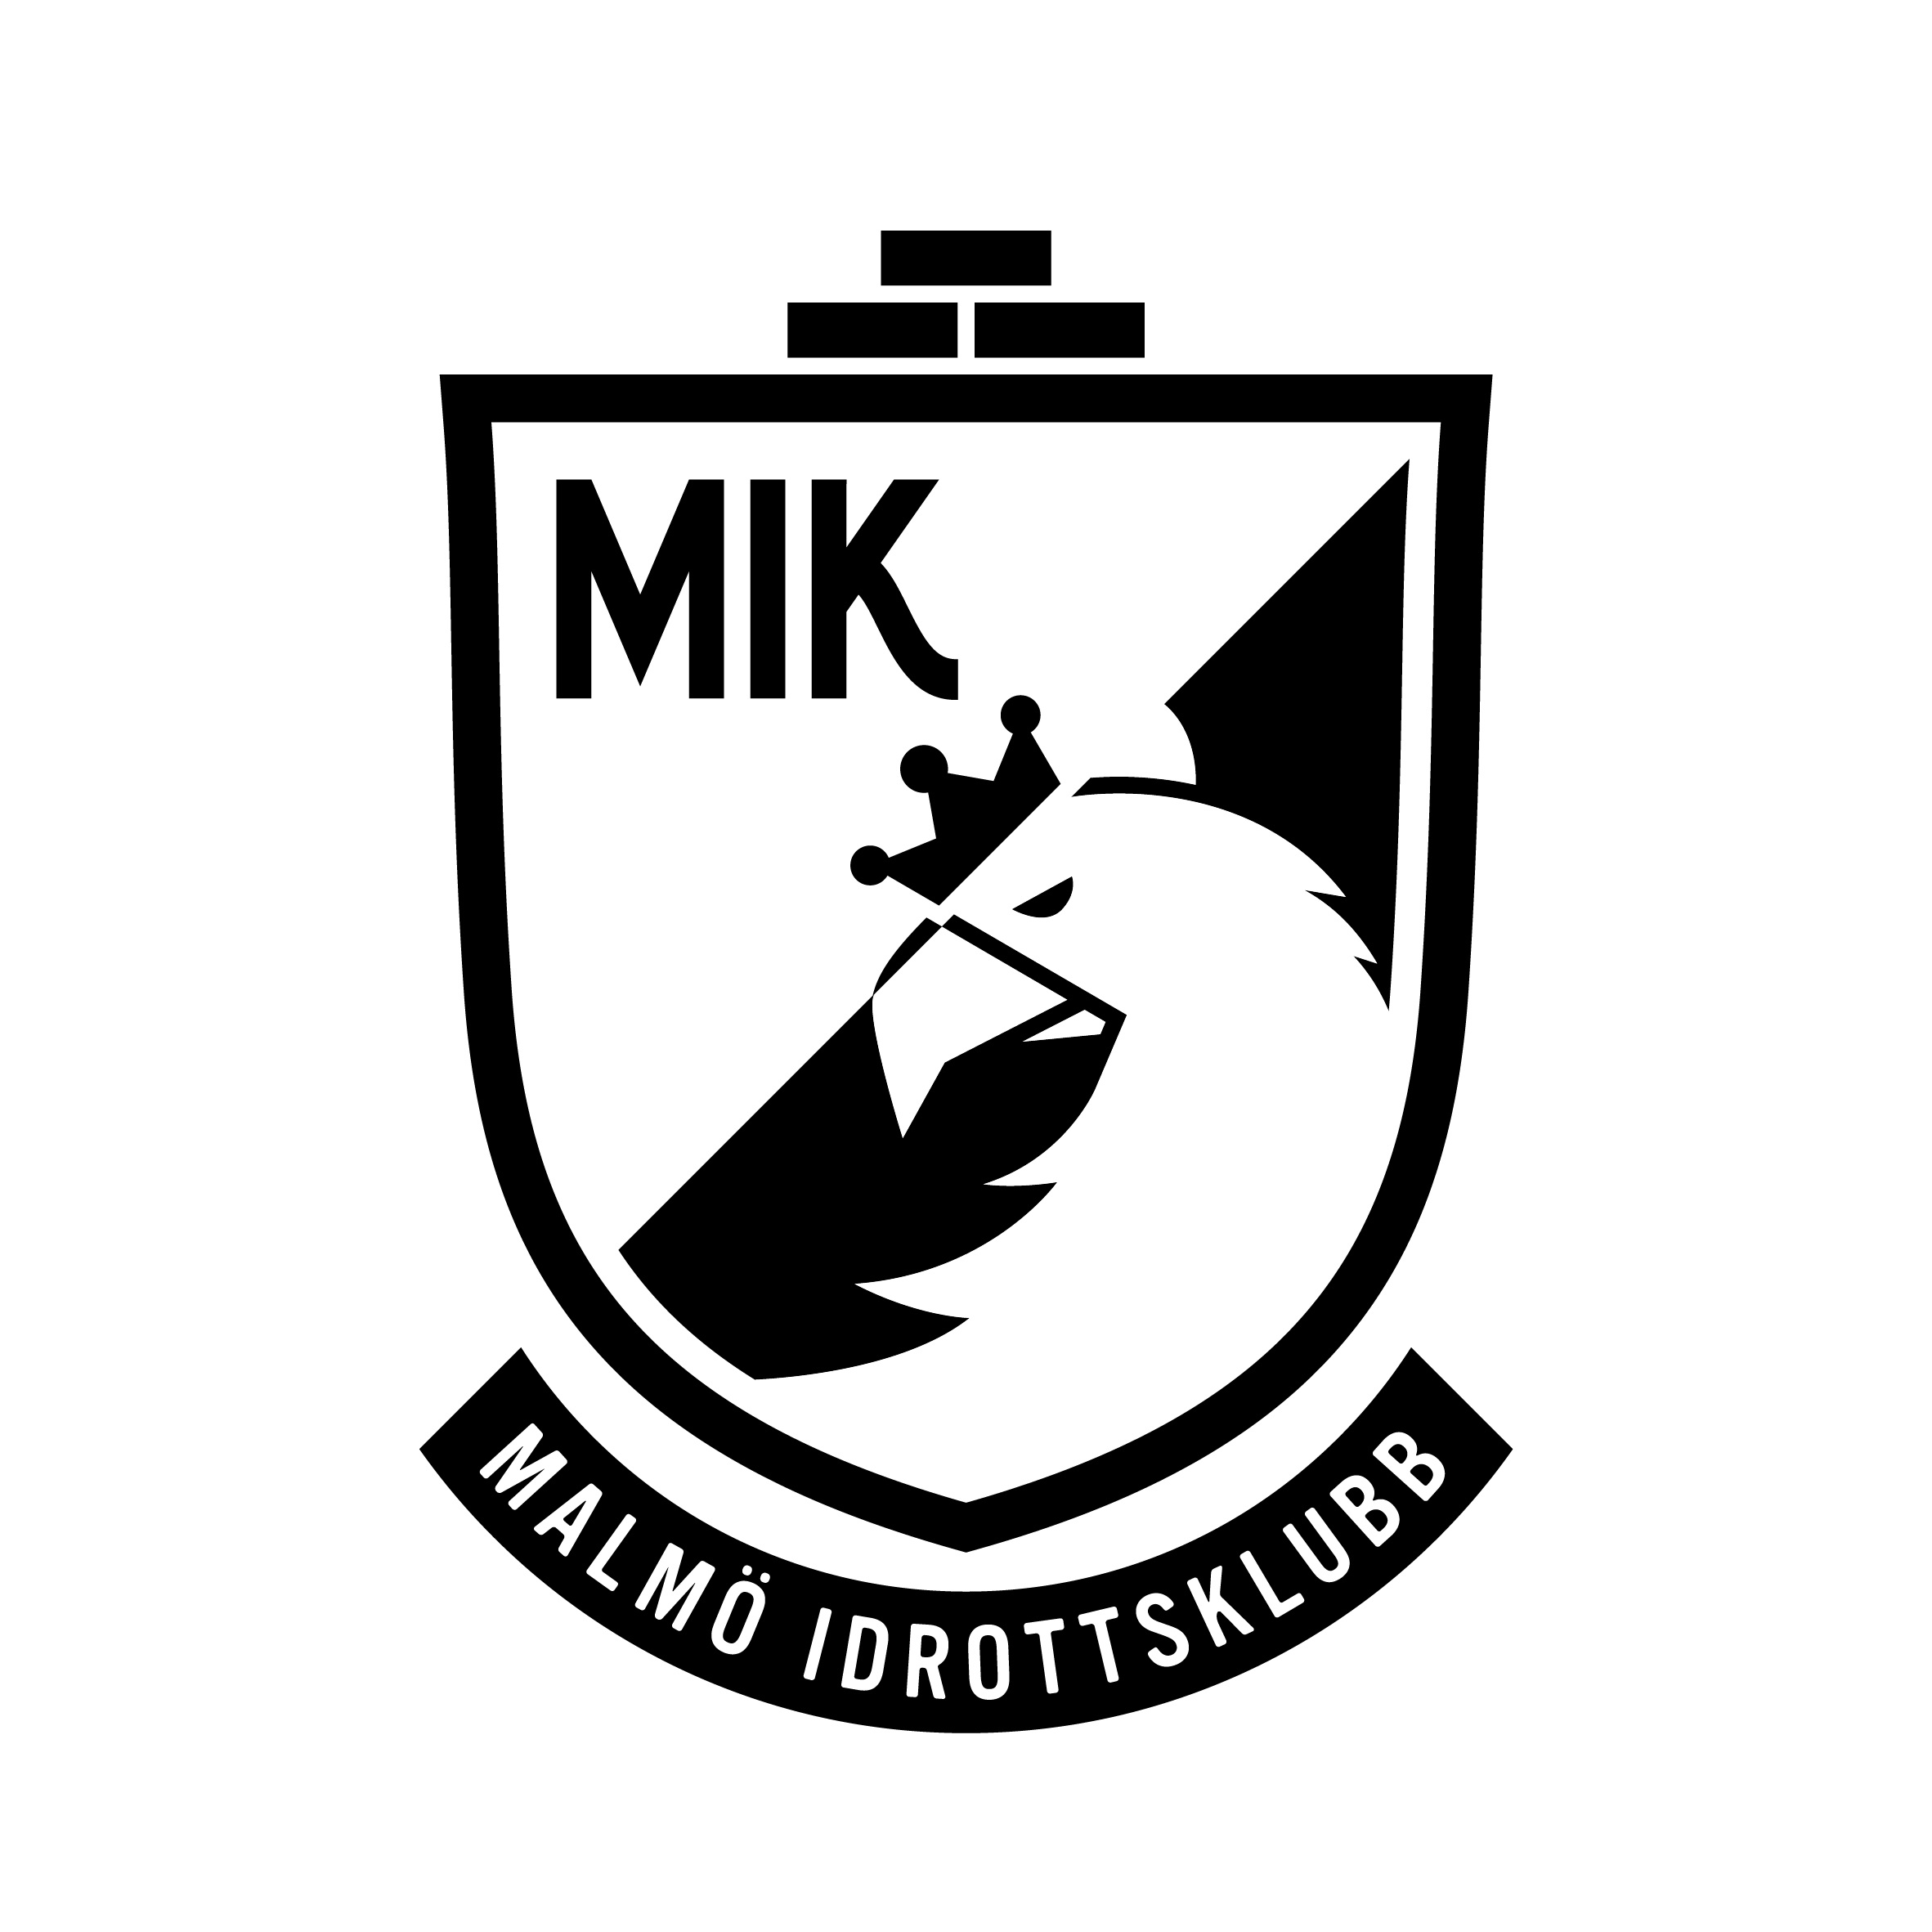 Malmö Idrottsklubb